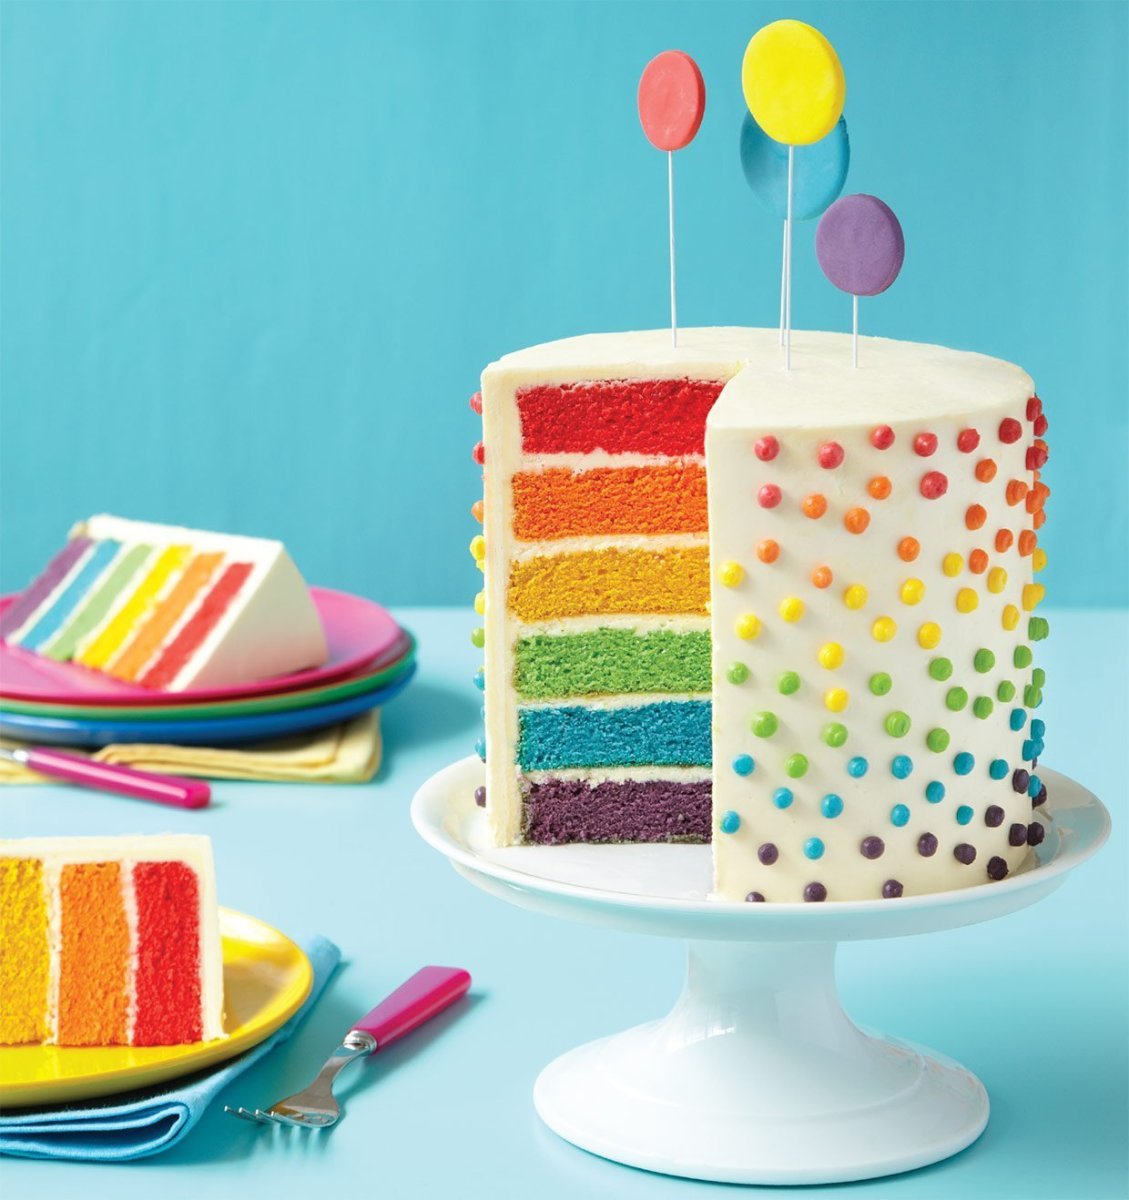 Разноцветный торт для девочки